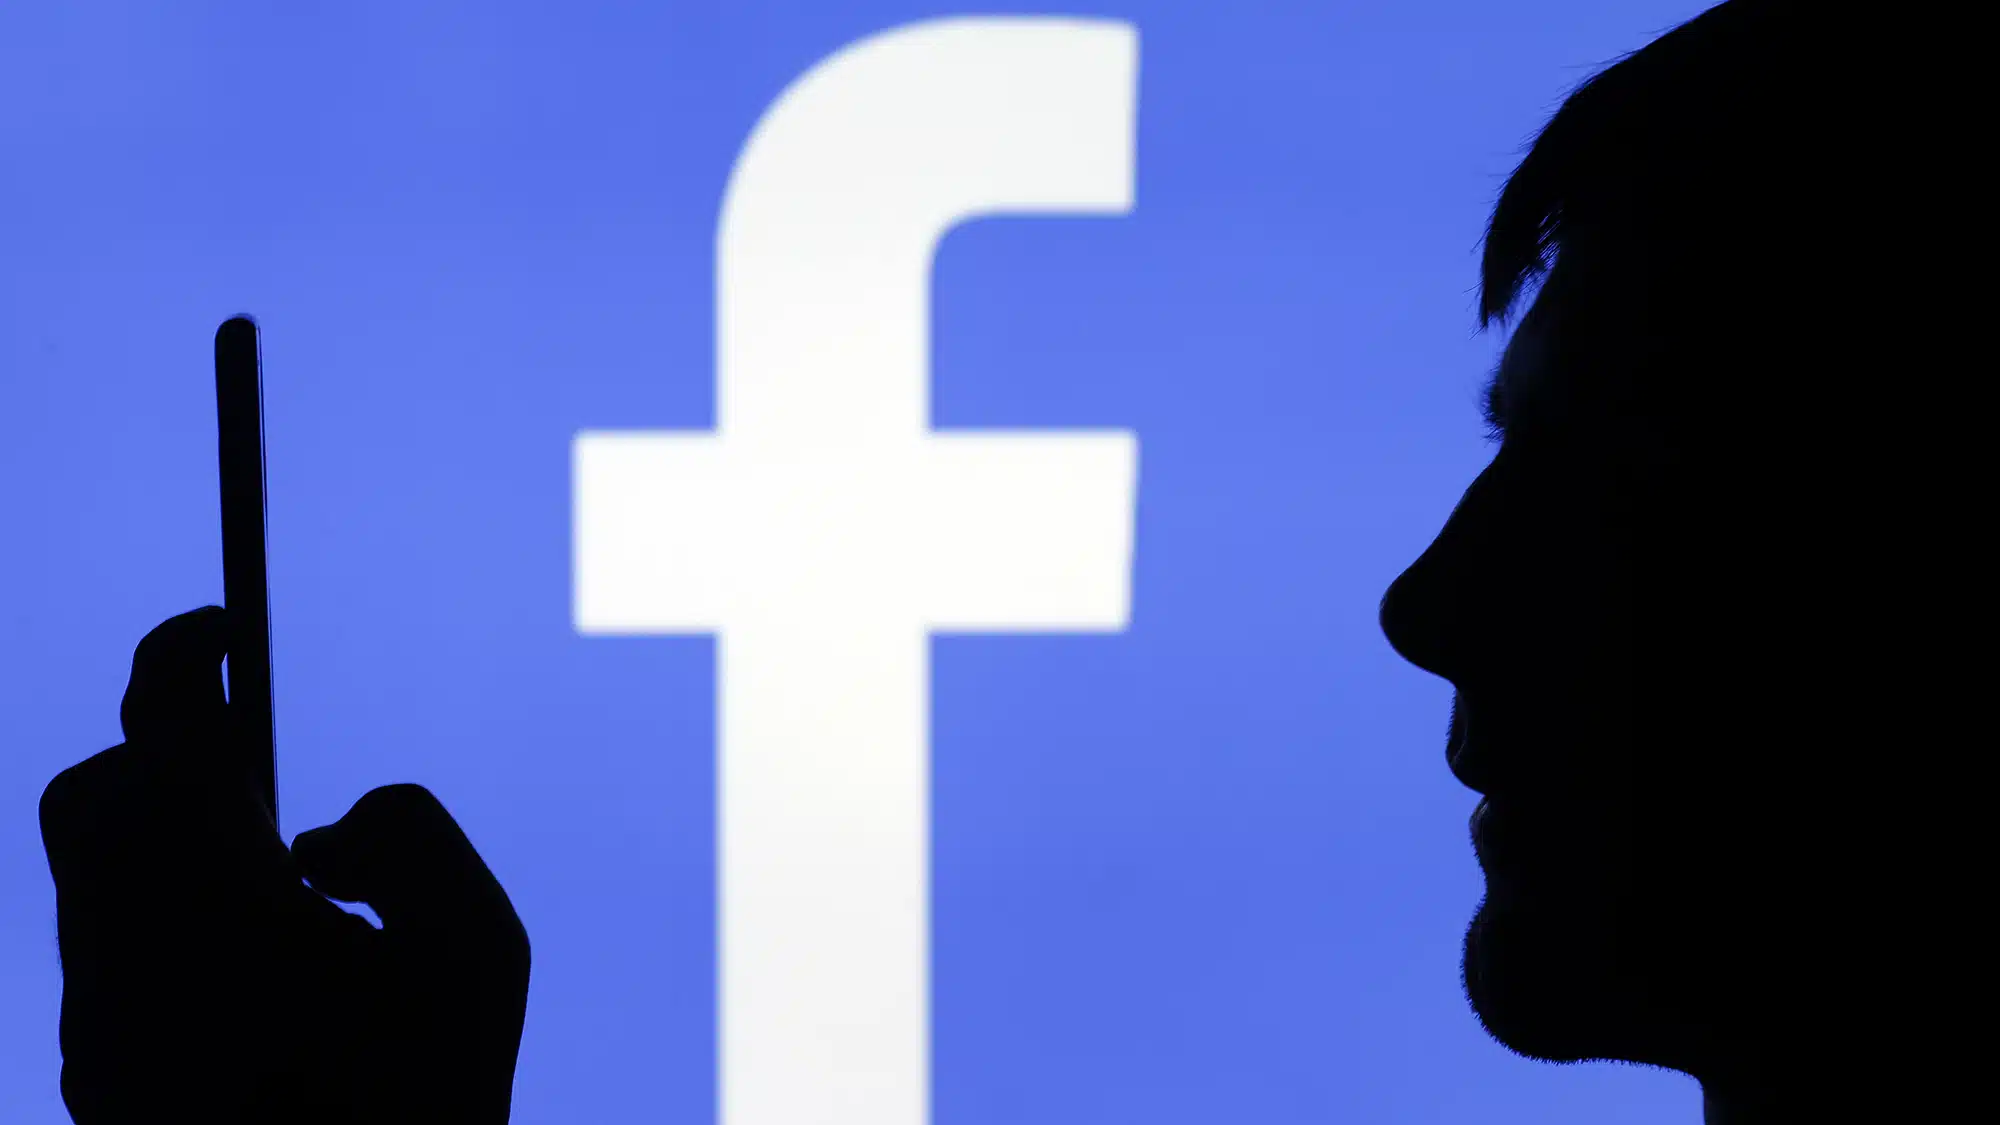 Acusan tráfico de personas y delitos contra menores a través de Facebook e Instagram; demandan a Meta